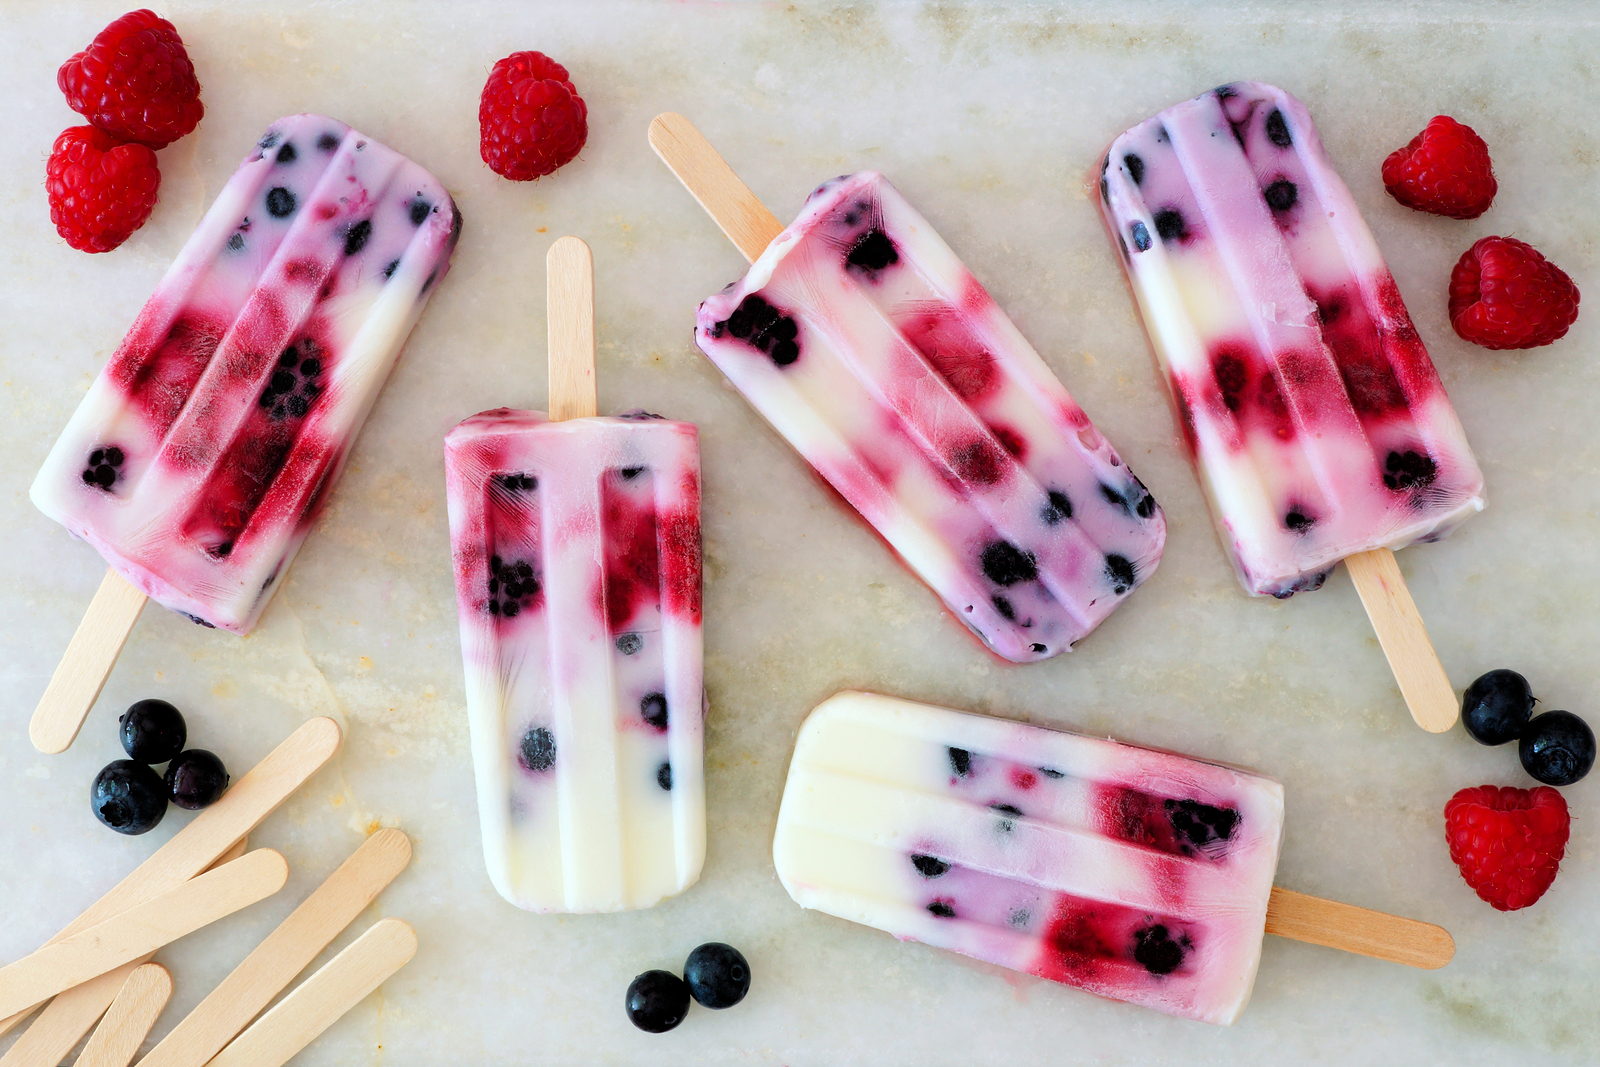 bigstock-Healthy-Mixed-Berry-Yogurt-Pop-184833331.jpg